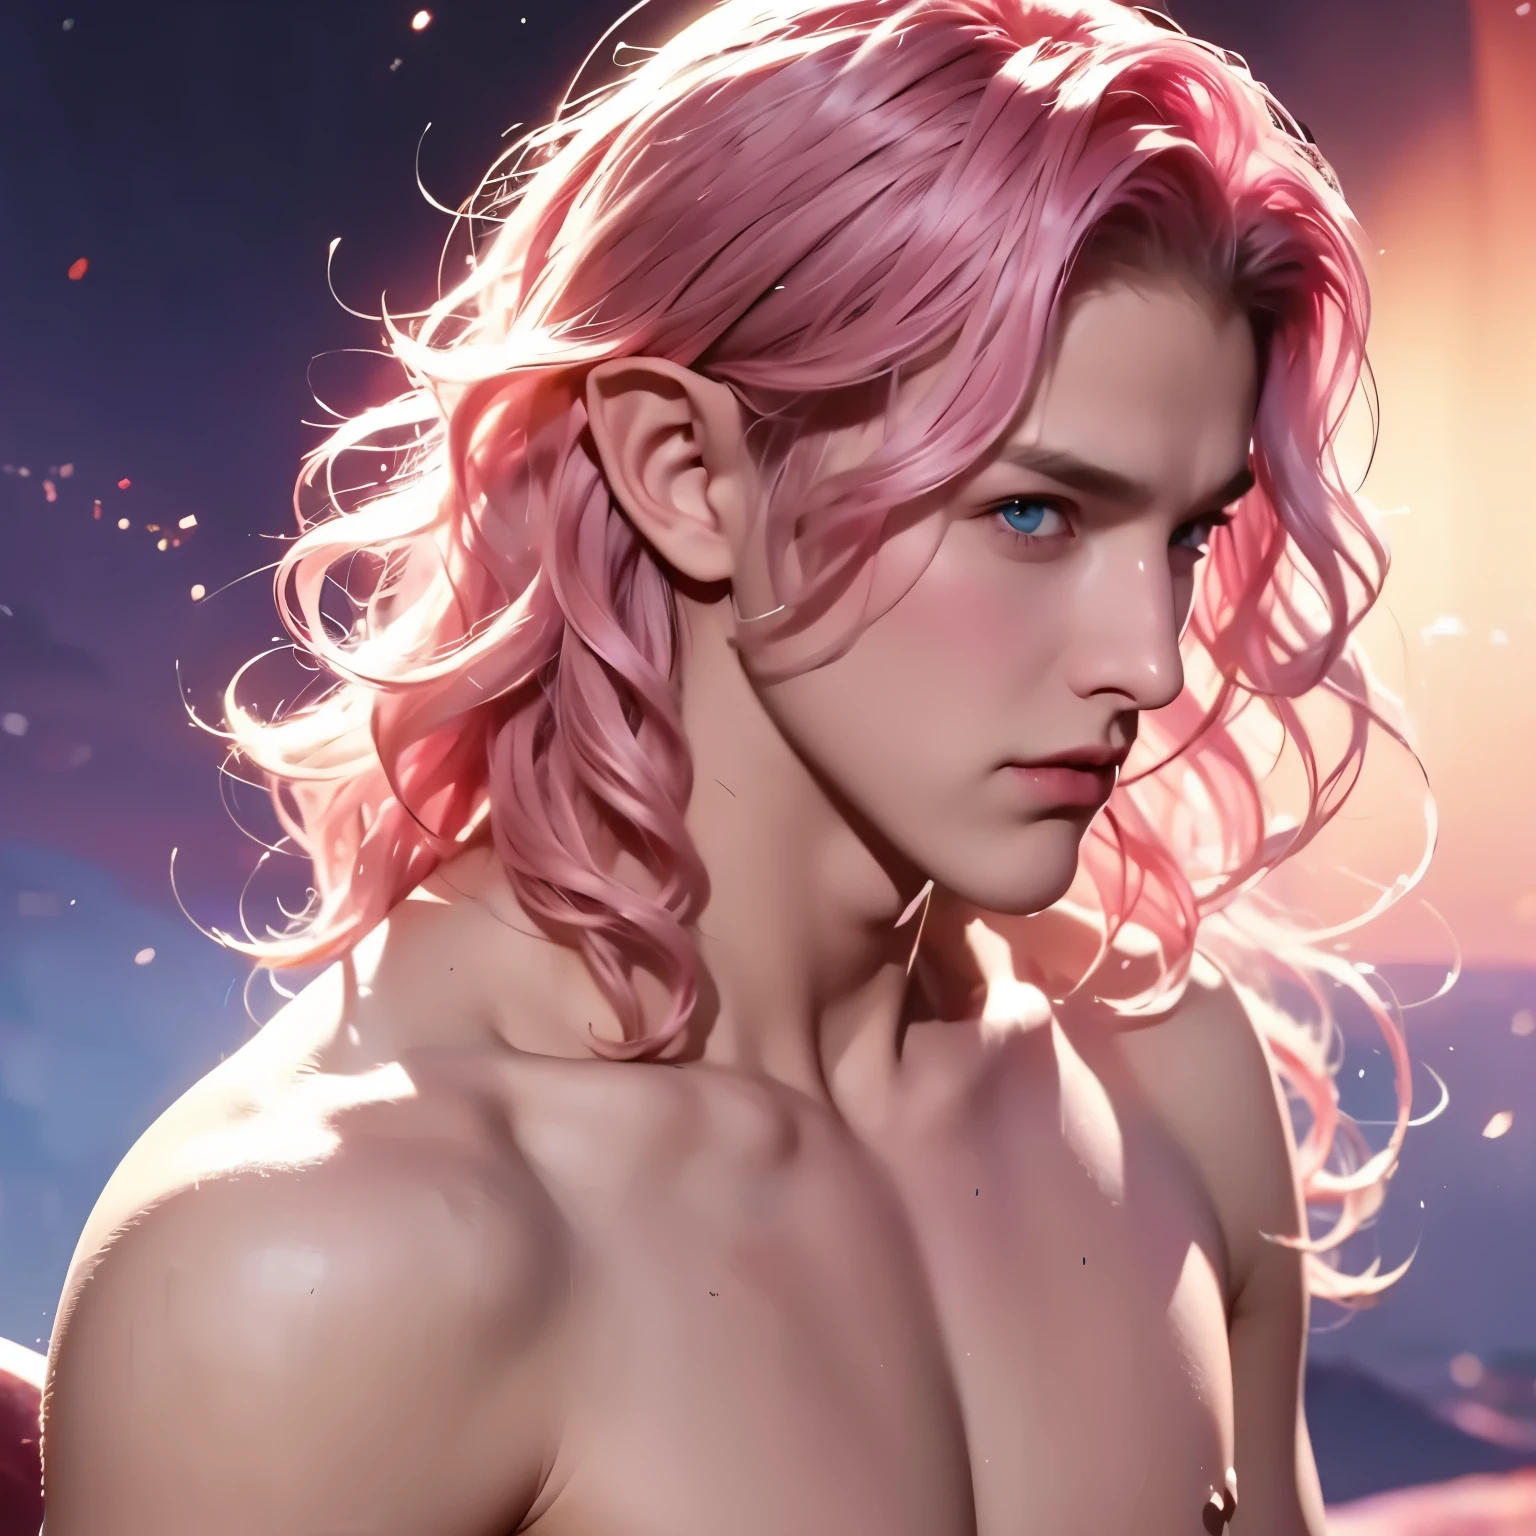 男人, 年輕的, 男生, 短捲髮, 粉紅色的頭髮, 藍眼睛, 小精靈, 赤裸上身的, 中世紀背景